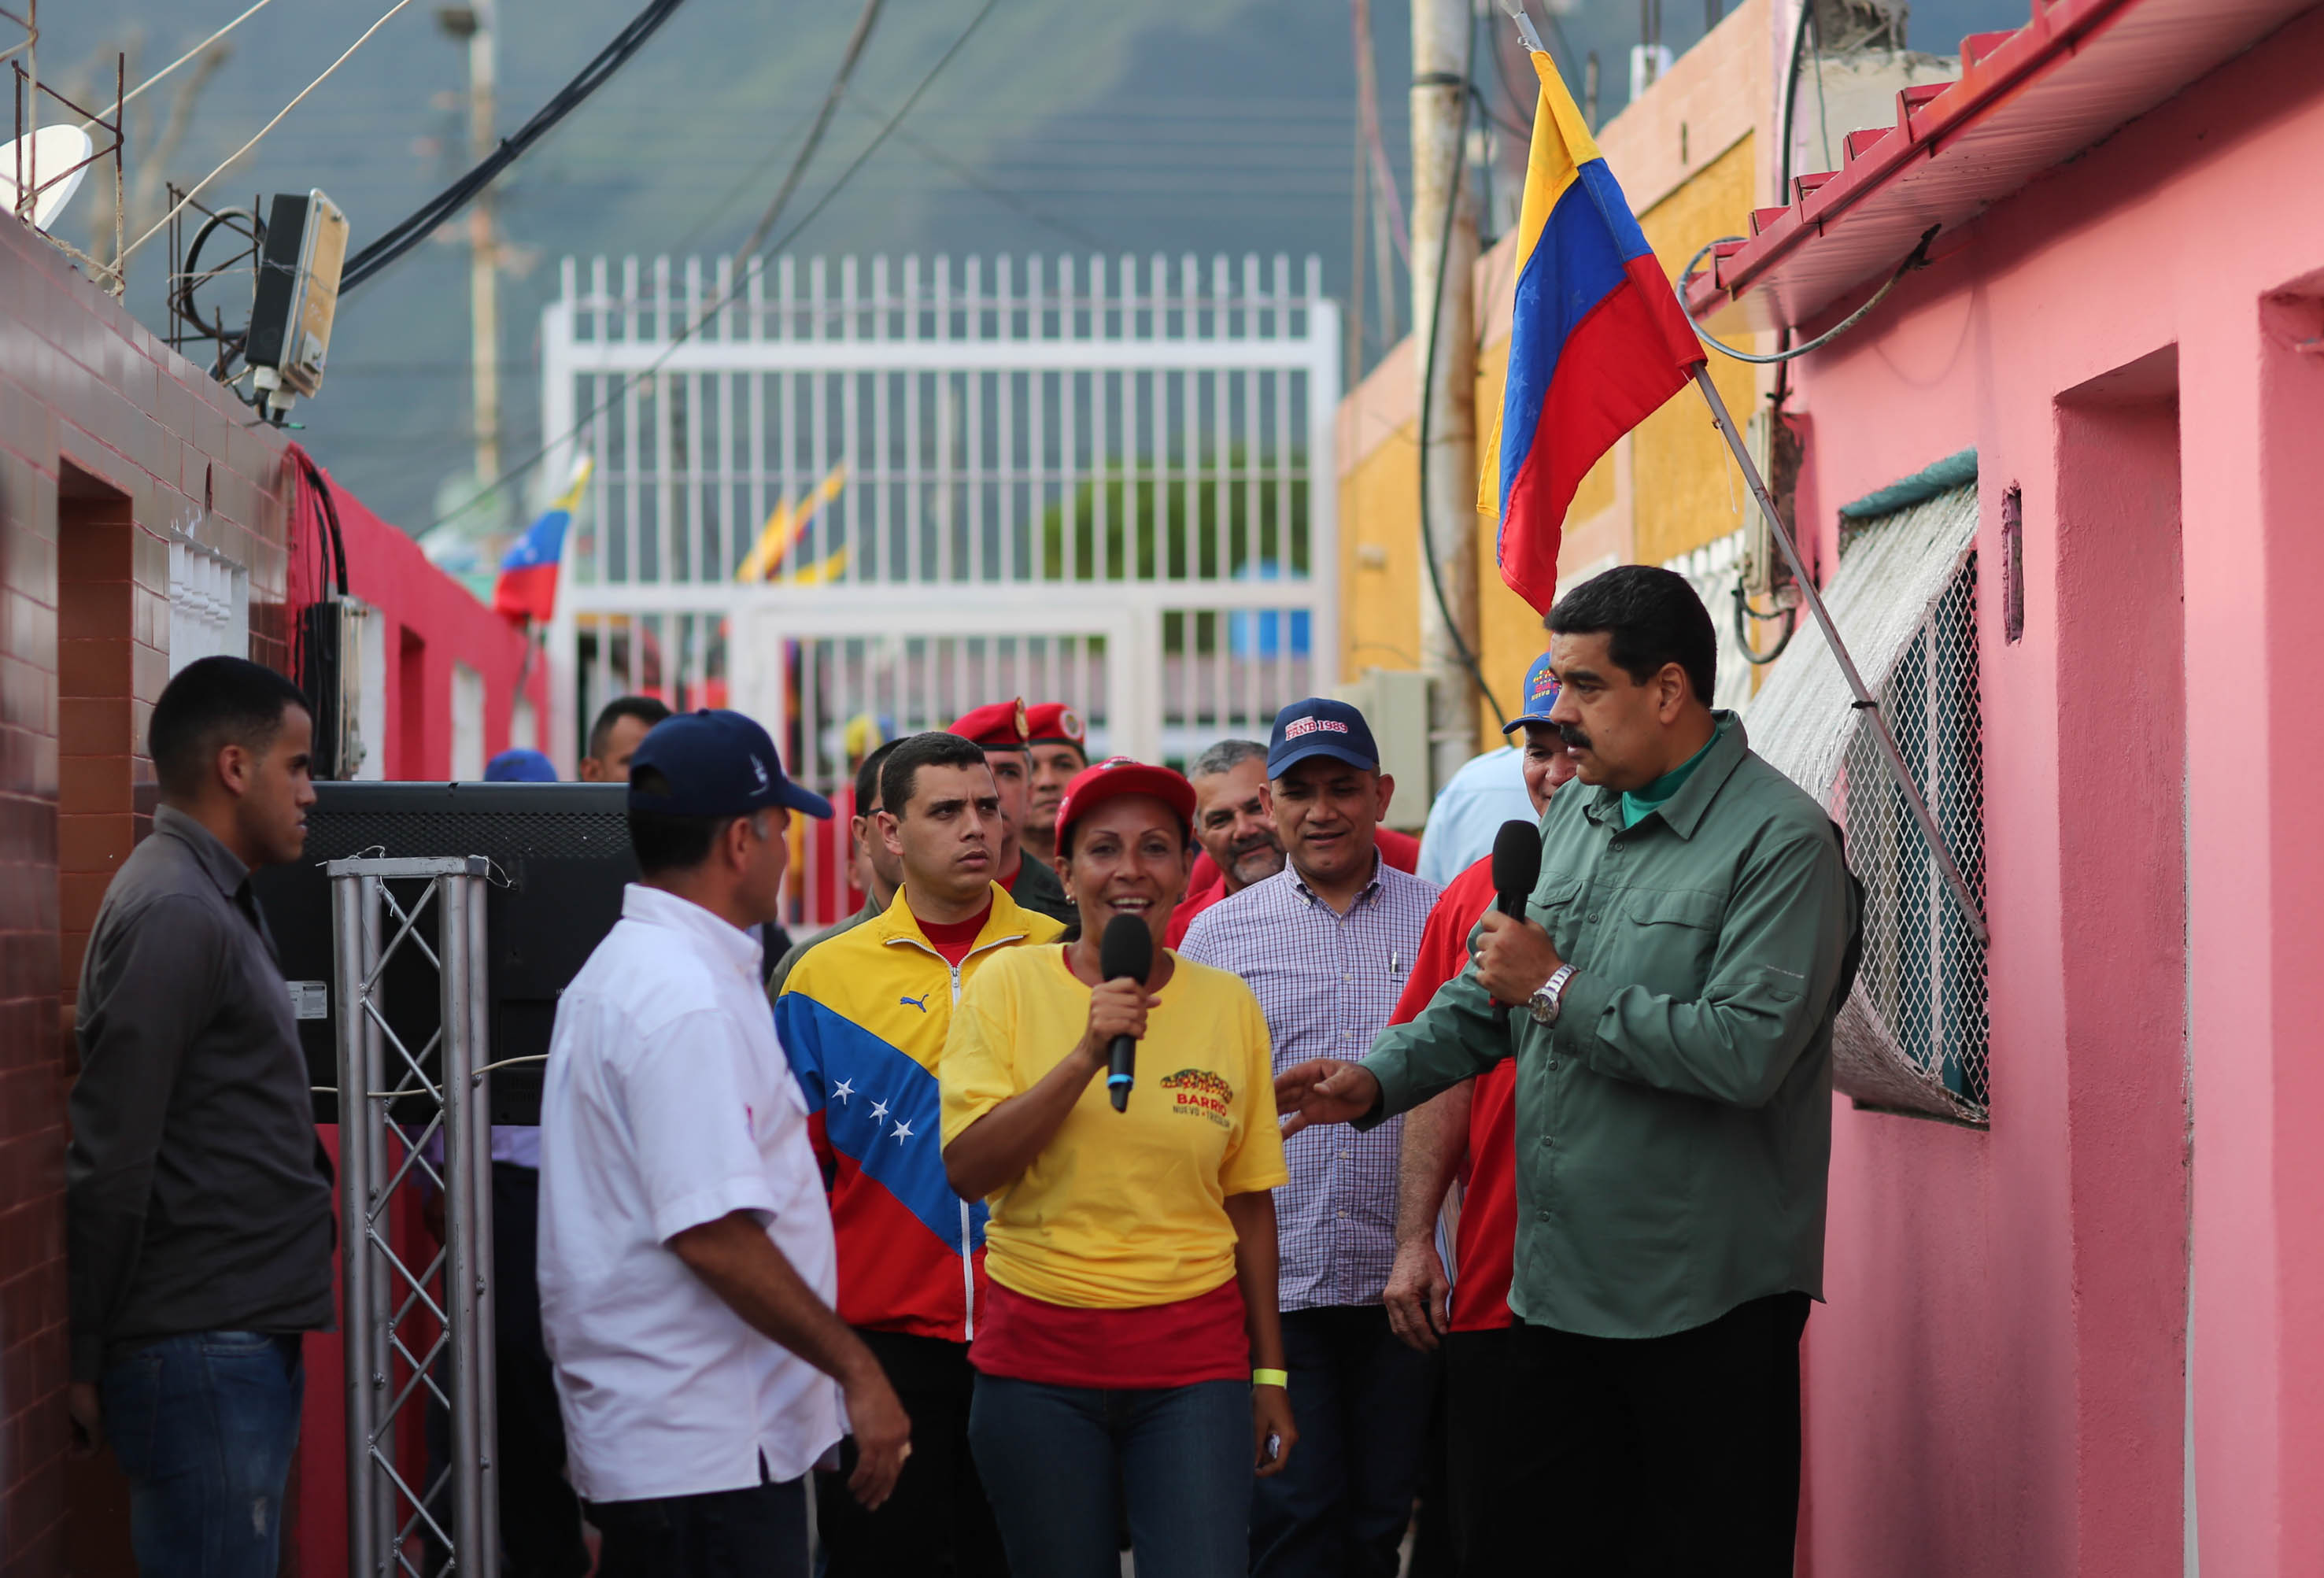 El presidente Maduro dirige este viernes una jornada de trabajo de la Gran Misión Barrio Nuevo Barrio Tricolor desde Nueva Esparta, al oriente del país.